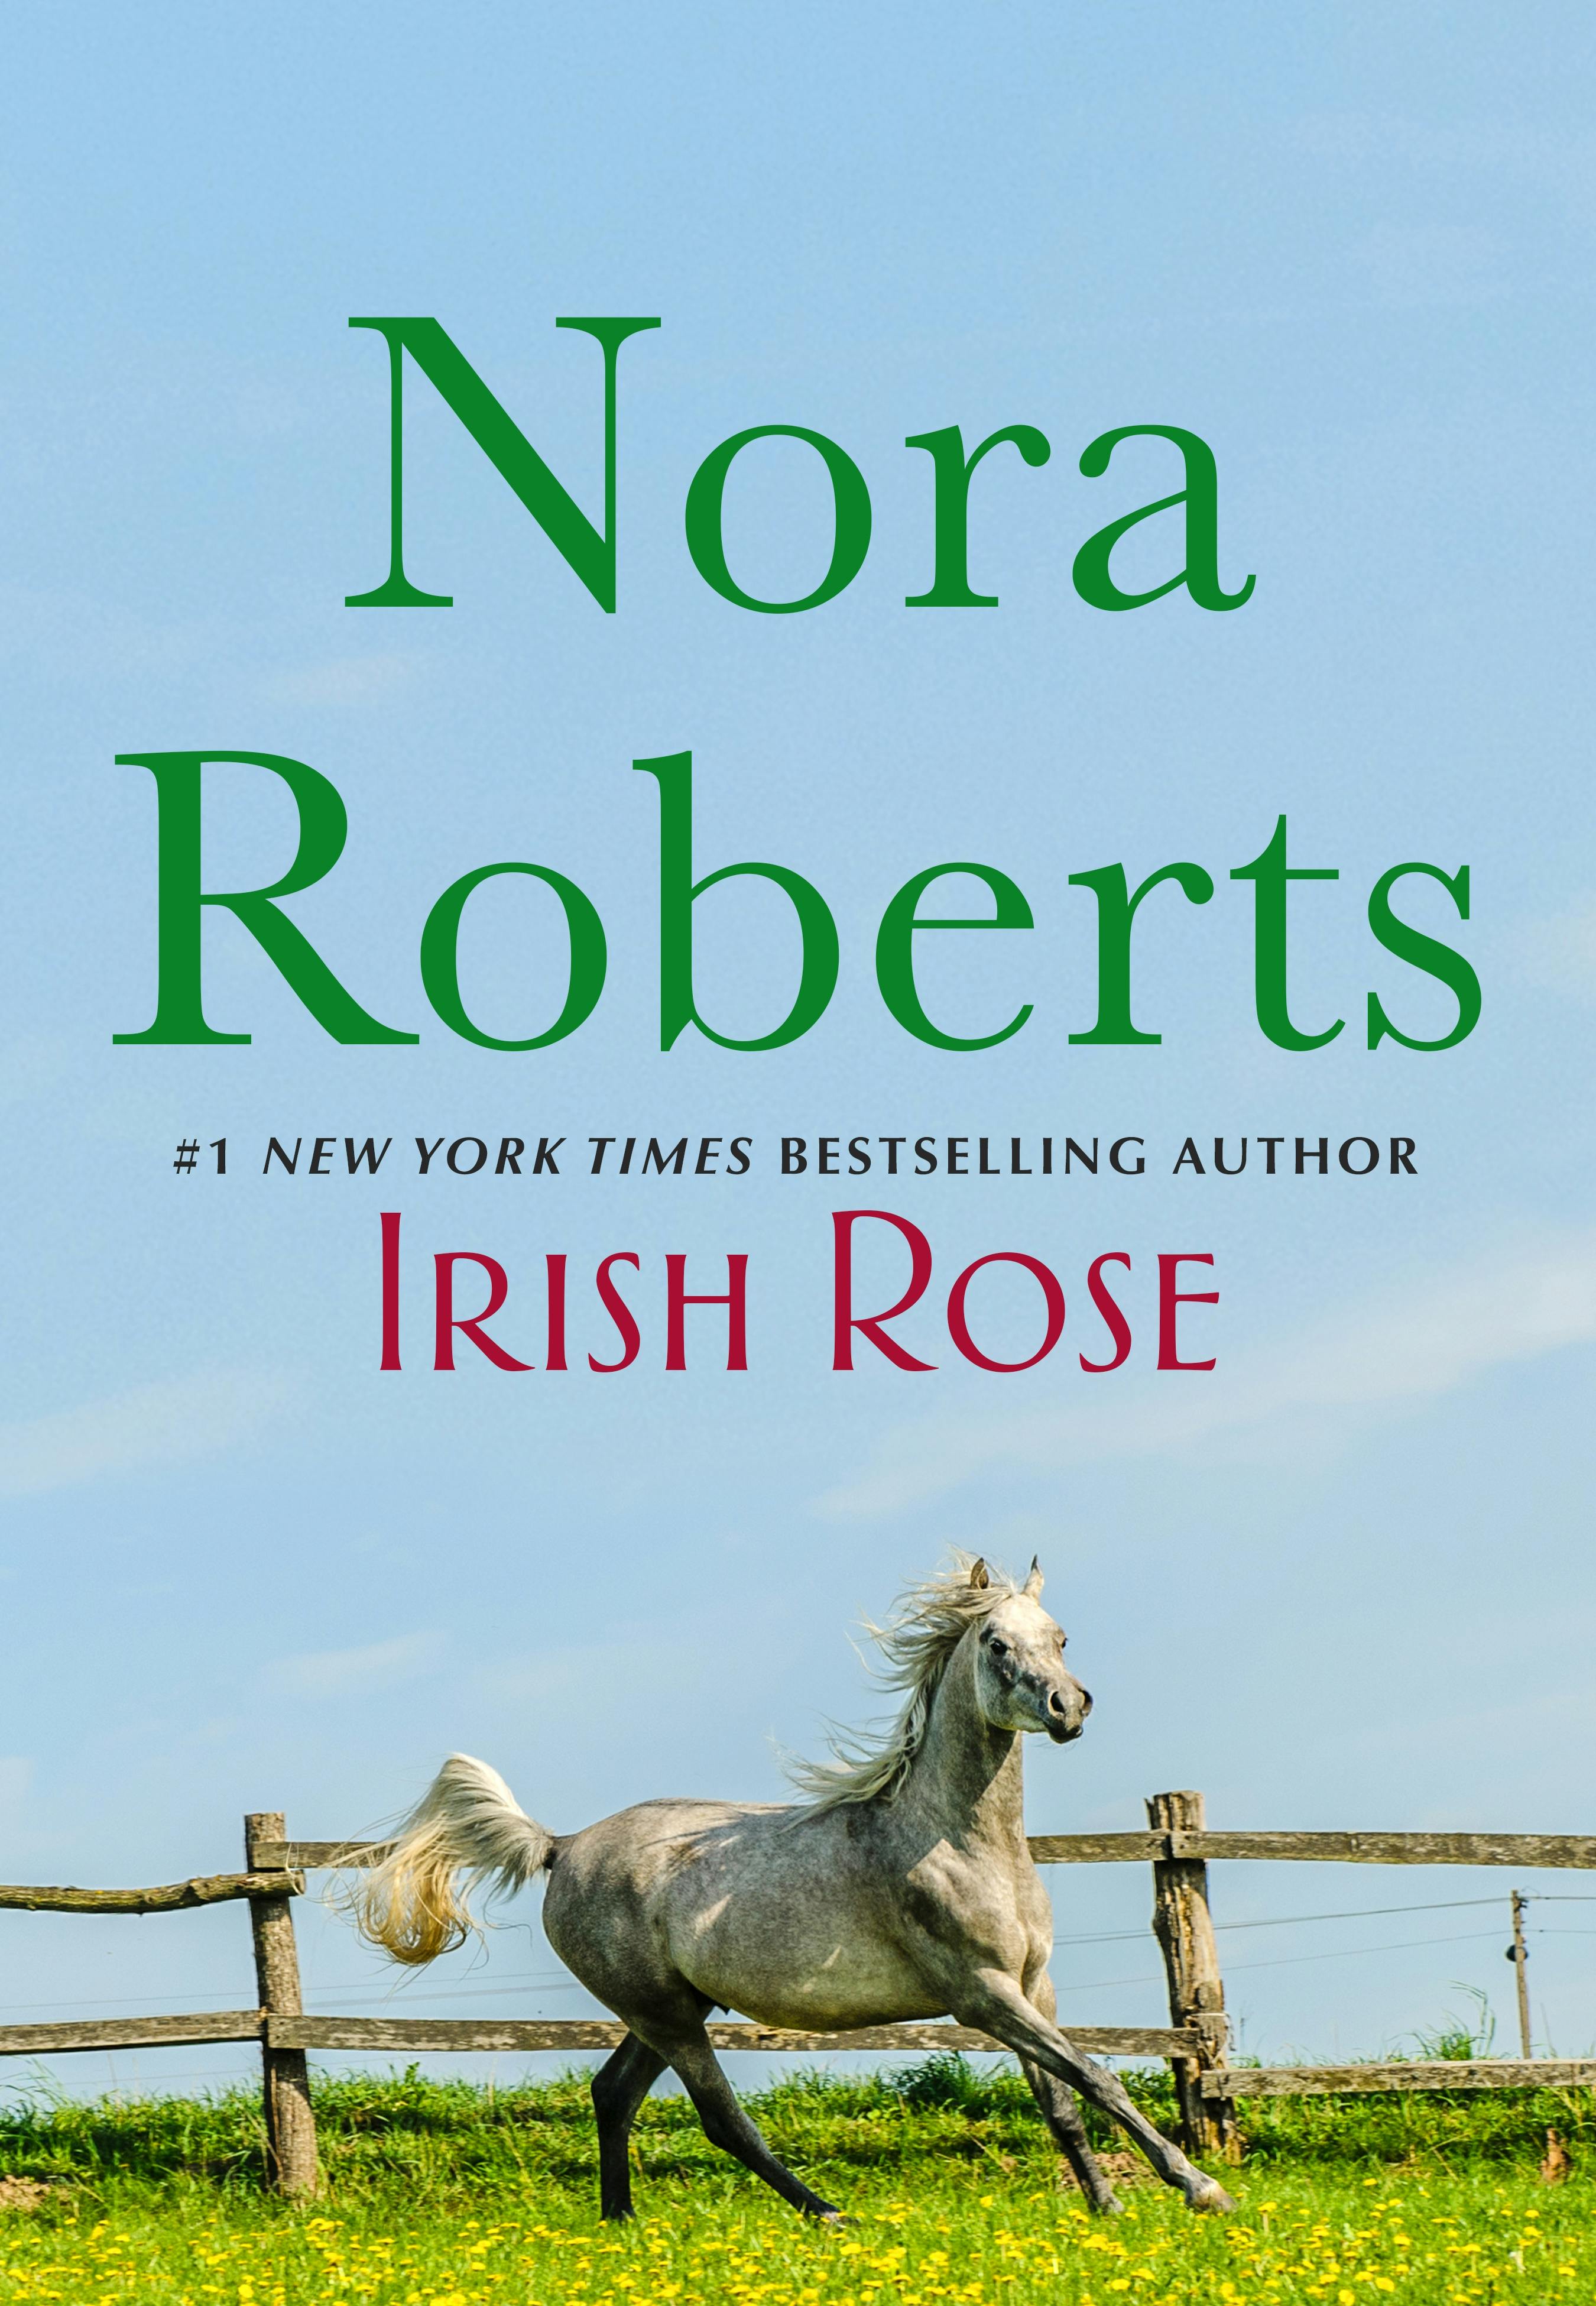 Image of Irish Rose